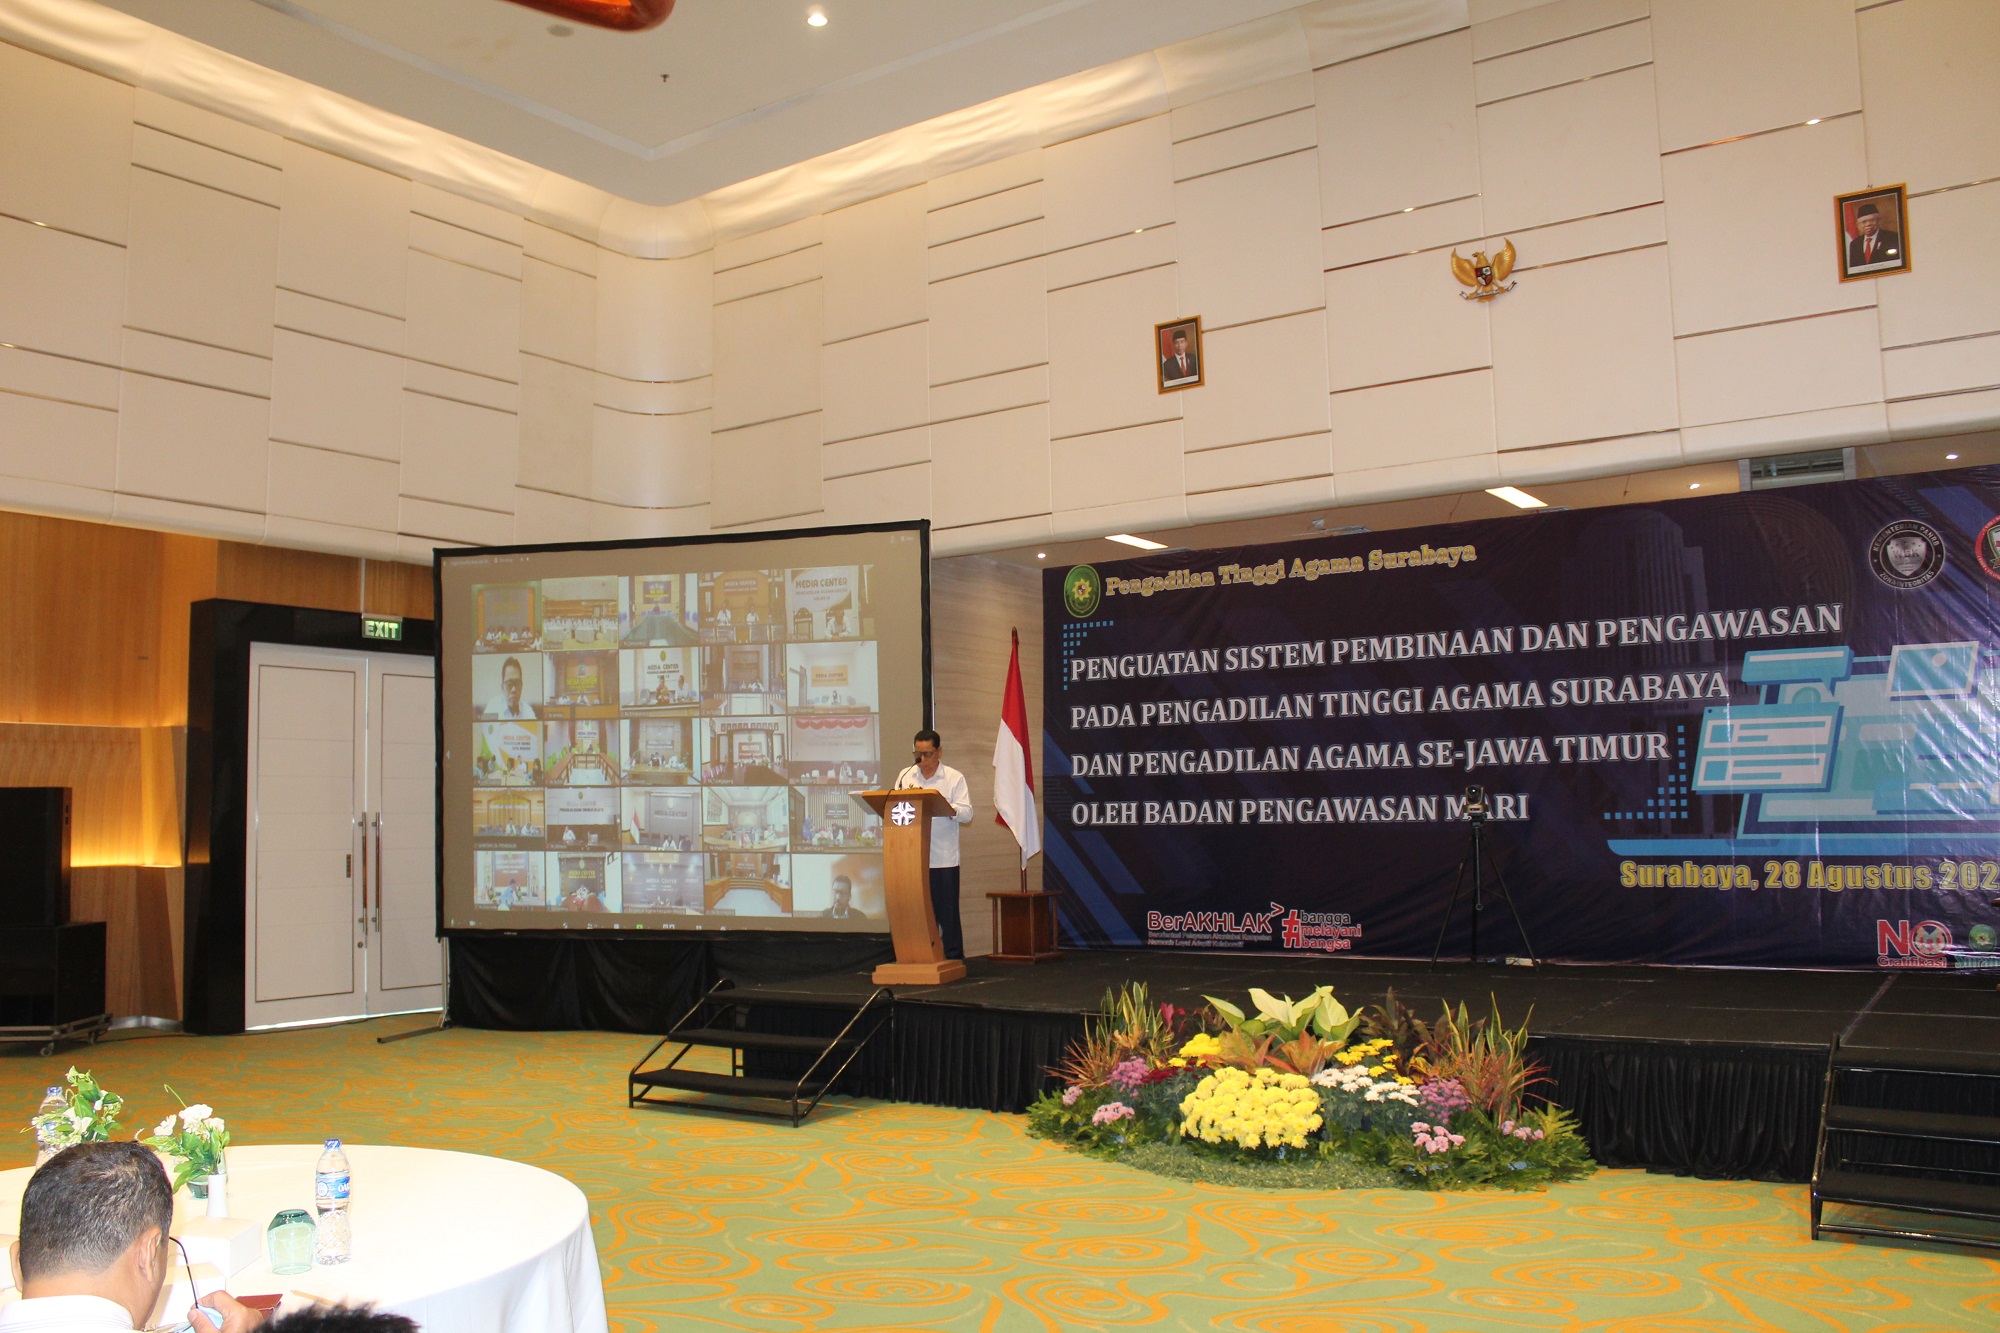 Penguatan sistem pembinaan dan pengawasan pada PTA Surabaya dan PA sejawa timur oleh BAWAS (7)